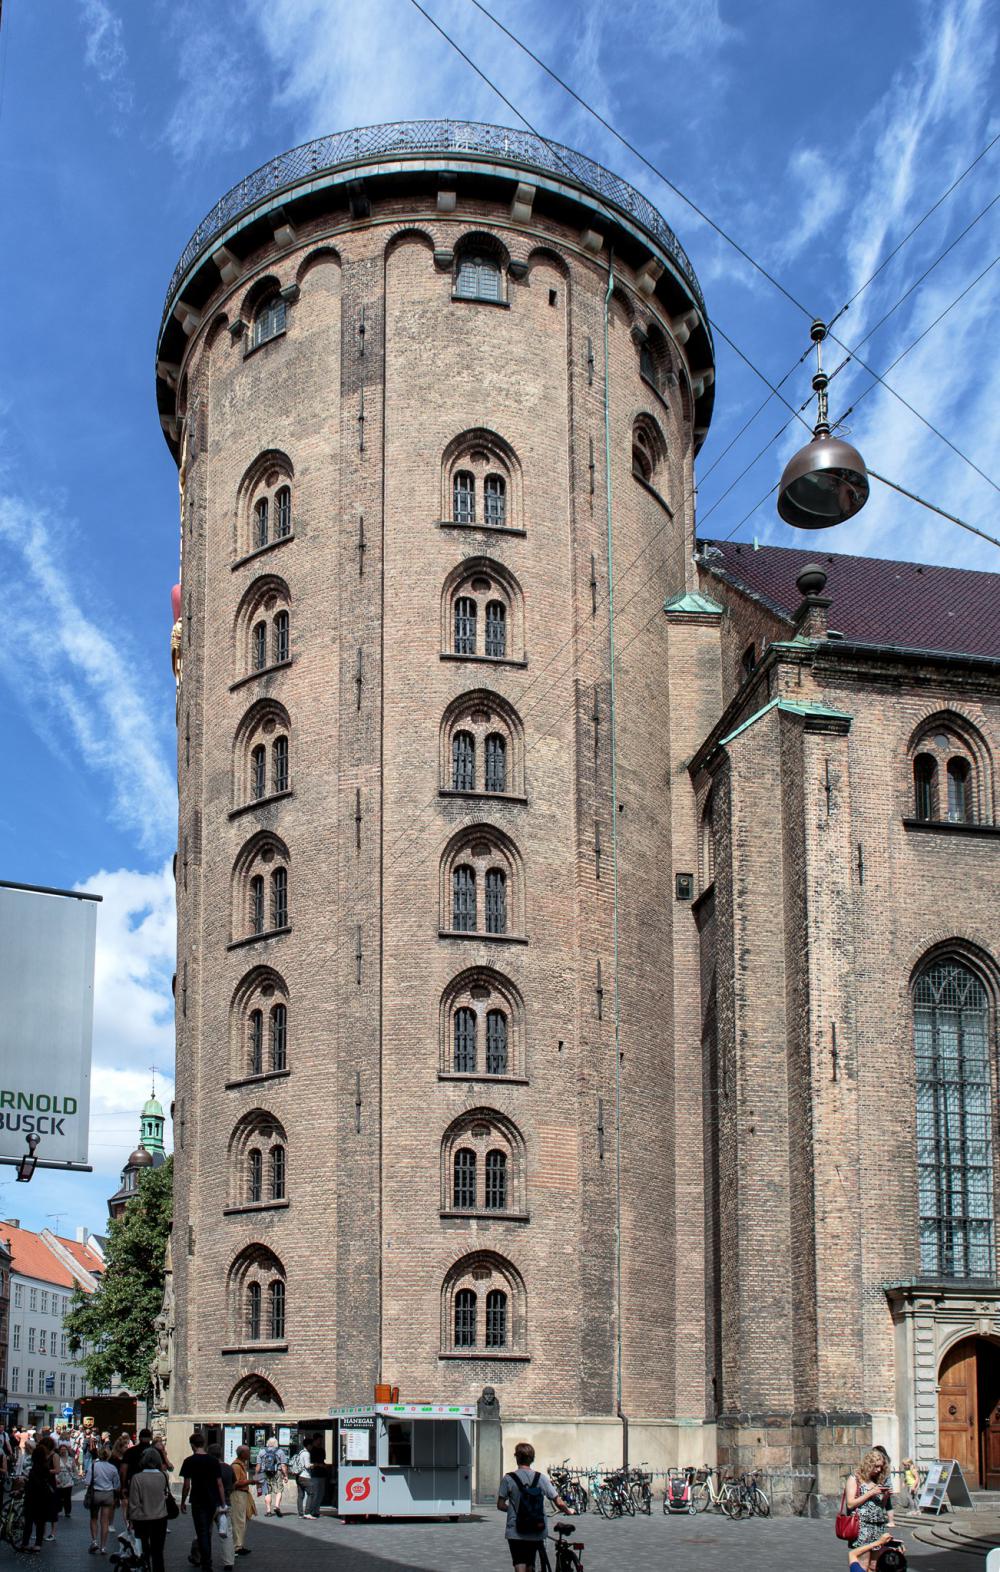 Rundetårn (Round Tower), Copenhagen (Wikipedia)